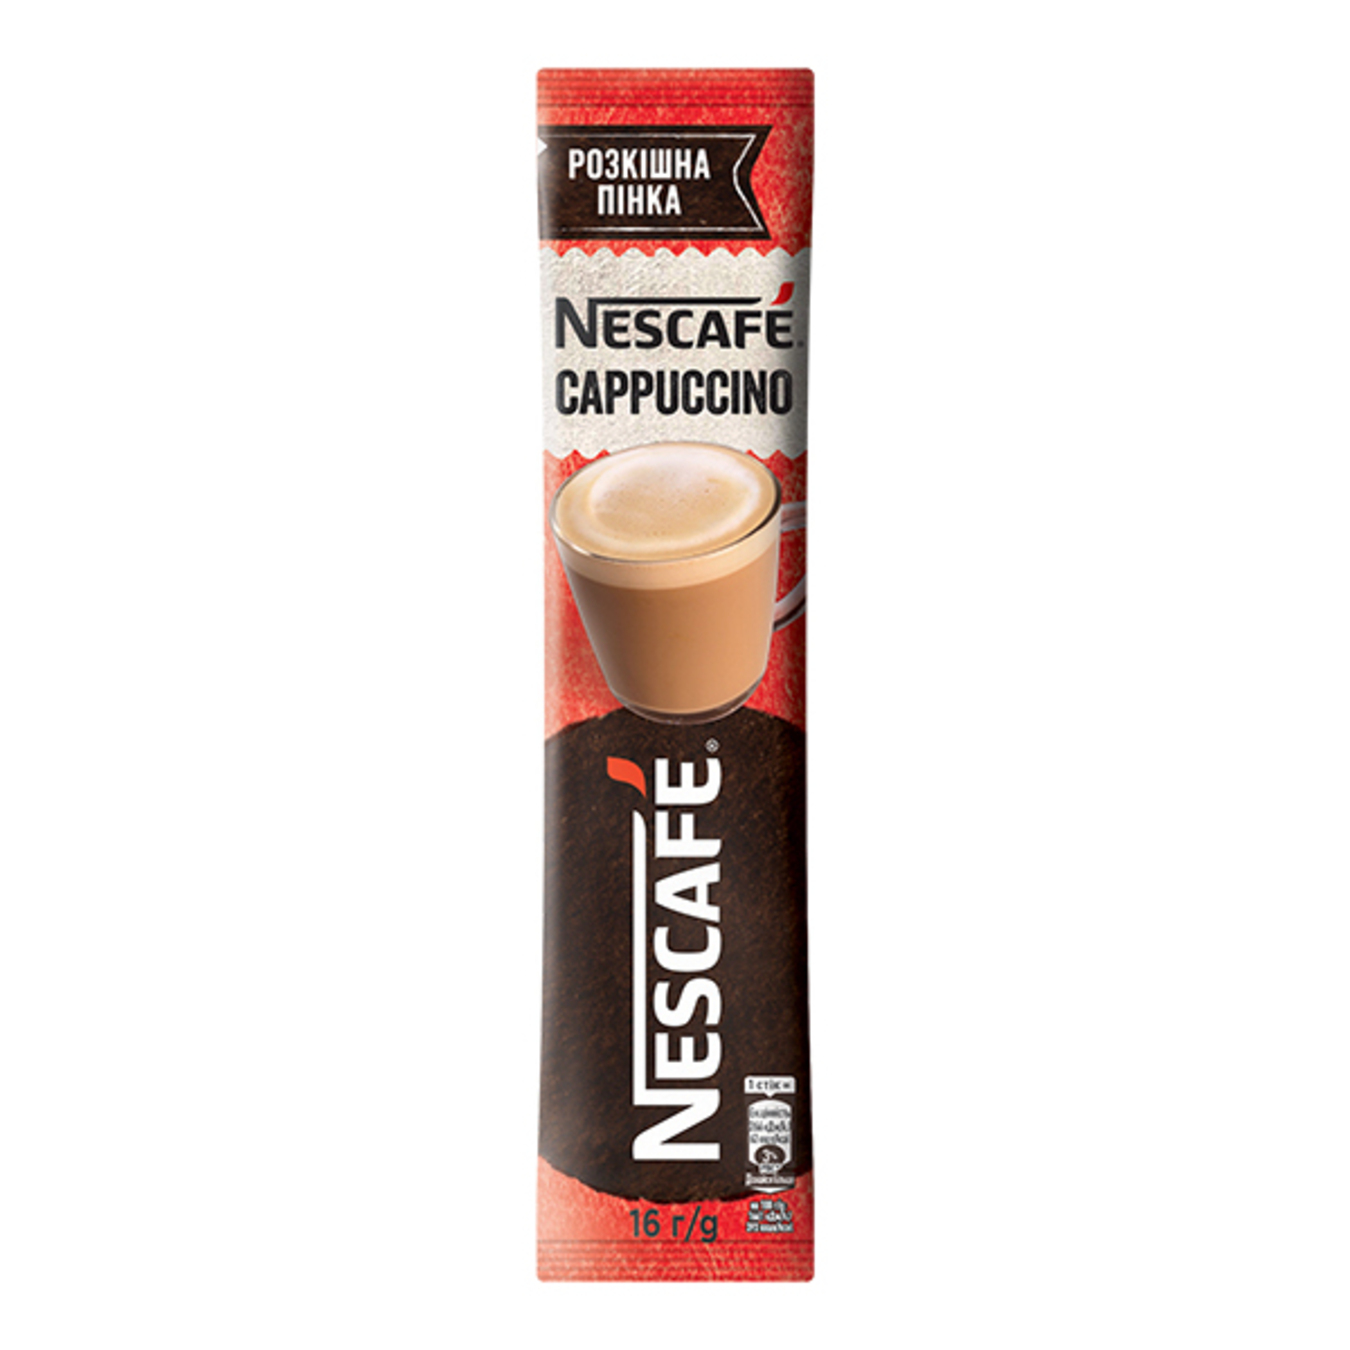 Кофе Nescafe Cappuccino растворимый 16г